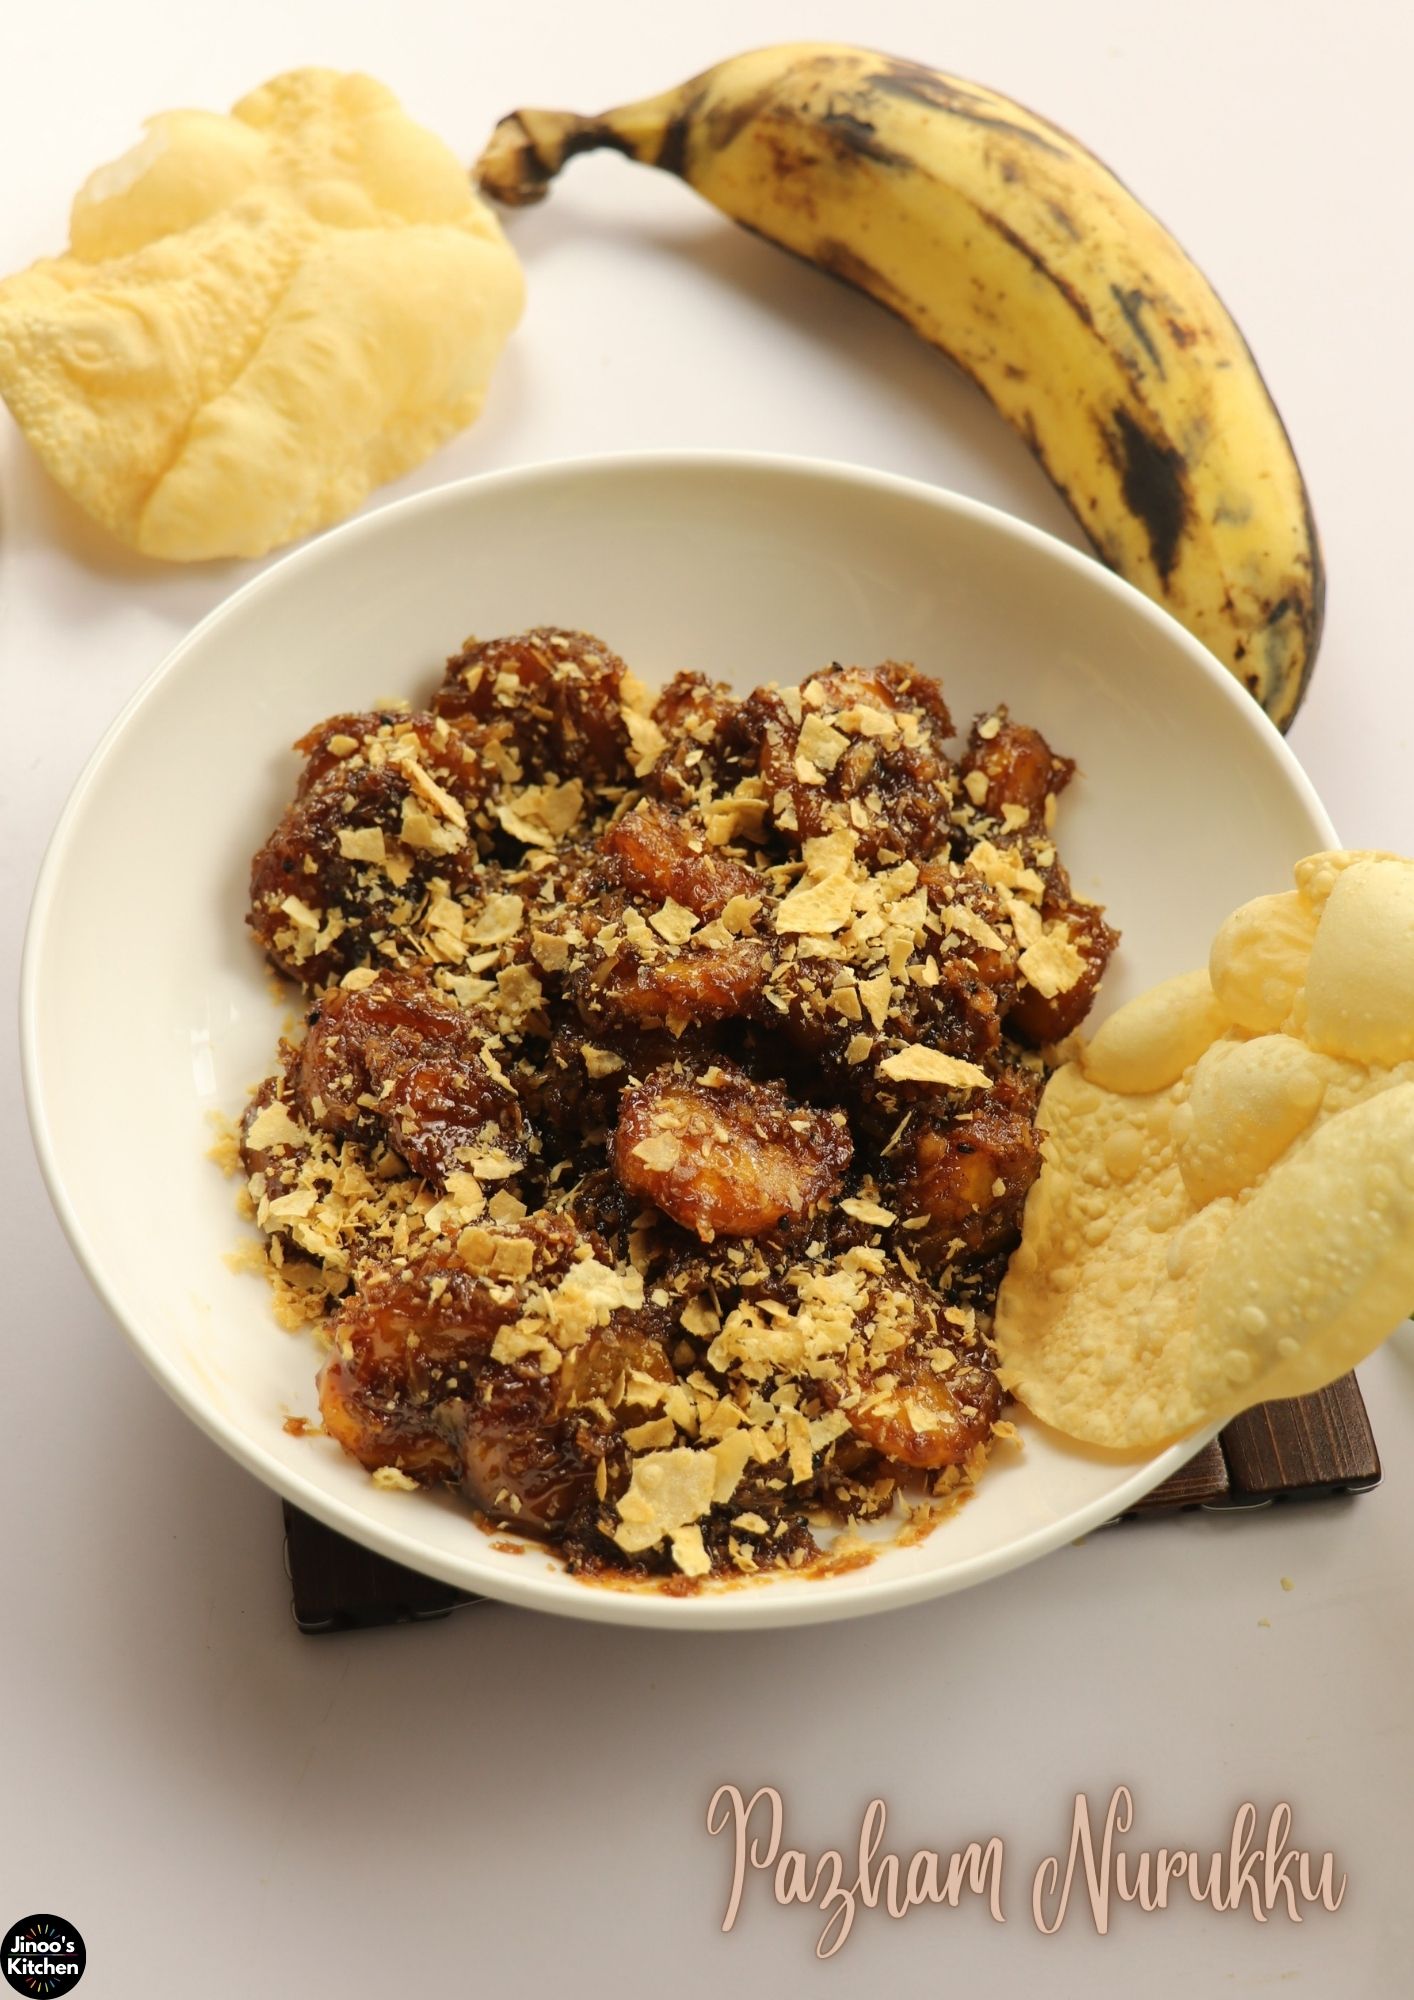 Chrissy Teigen's Banana Bread Recipe | POPSUGAR Food